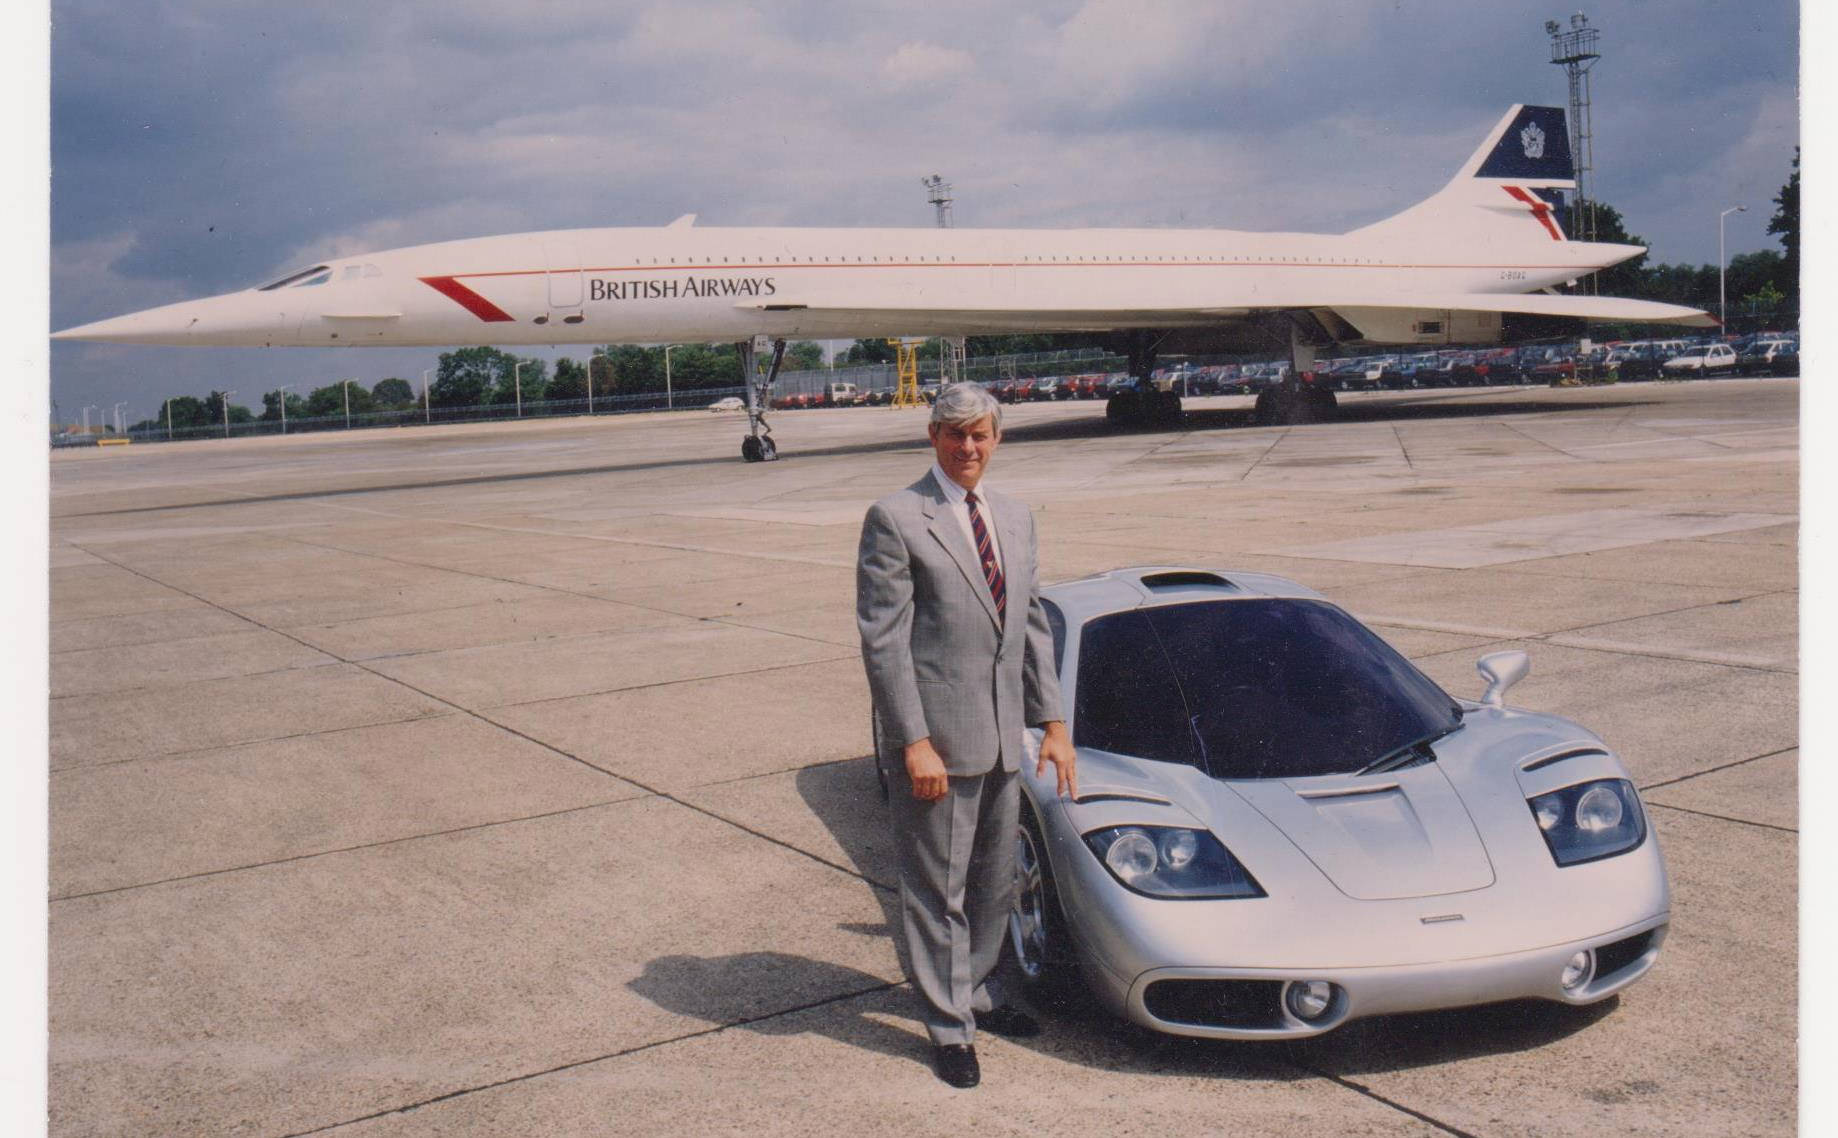 Giá vé Concorde đắt đỏ là thế, nhưng người đàn ông này đã bay 718 lần và được ghi vào sách Guinness